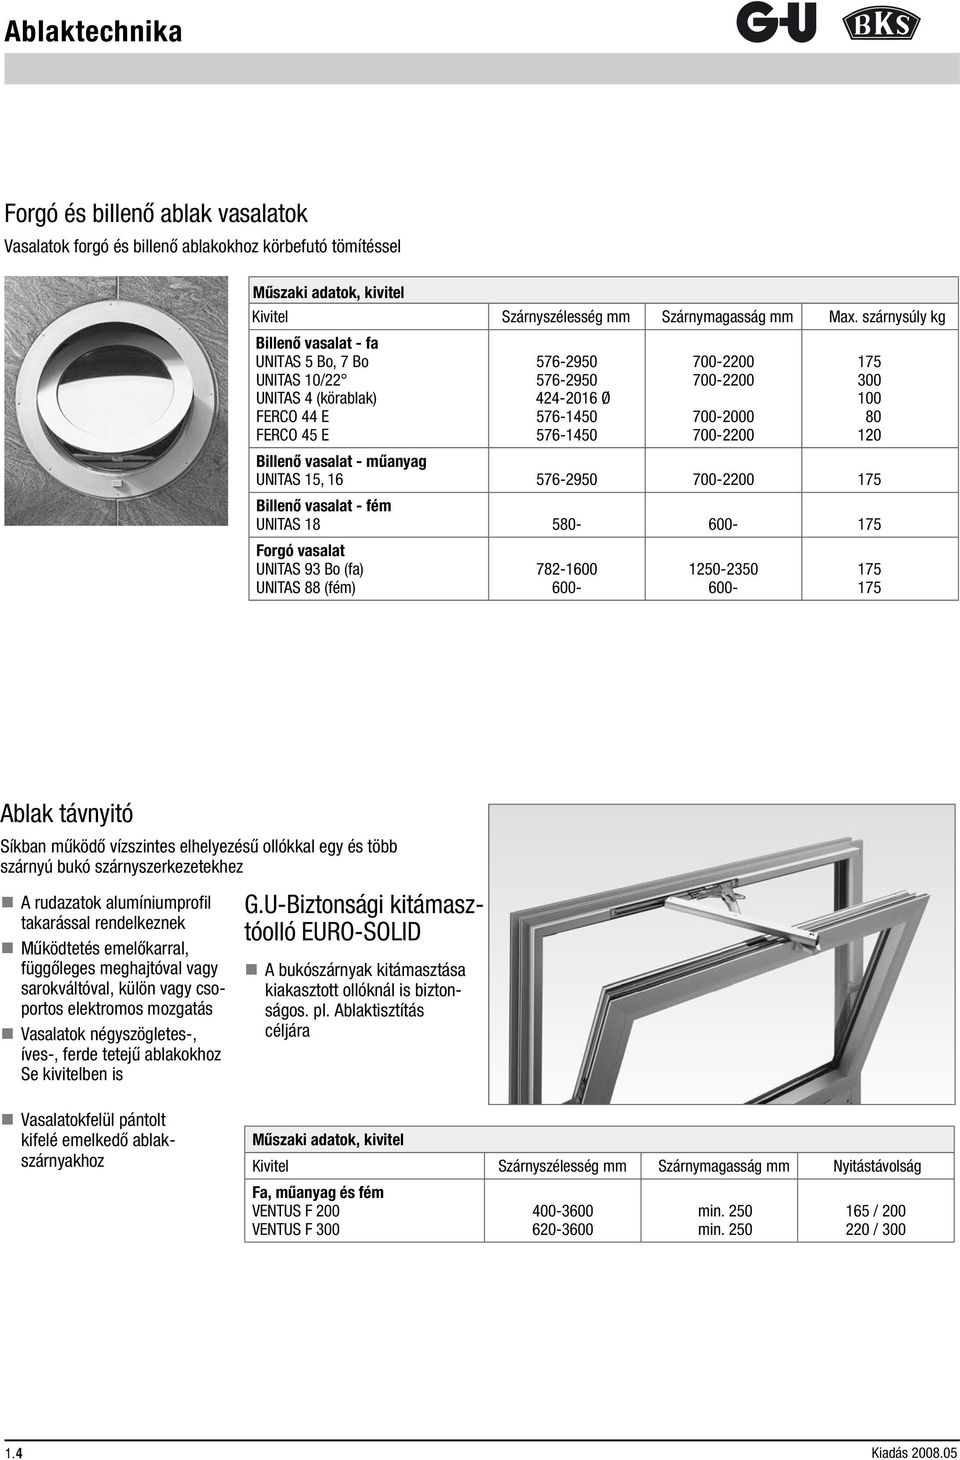 Rendelési katalógus. Külső szerelésű ablaktávnyitók fa, műanyag és fém  ablakokhoz. Kiadás Vissza - PDF Ingyenes letöltés